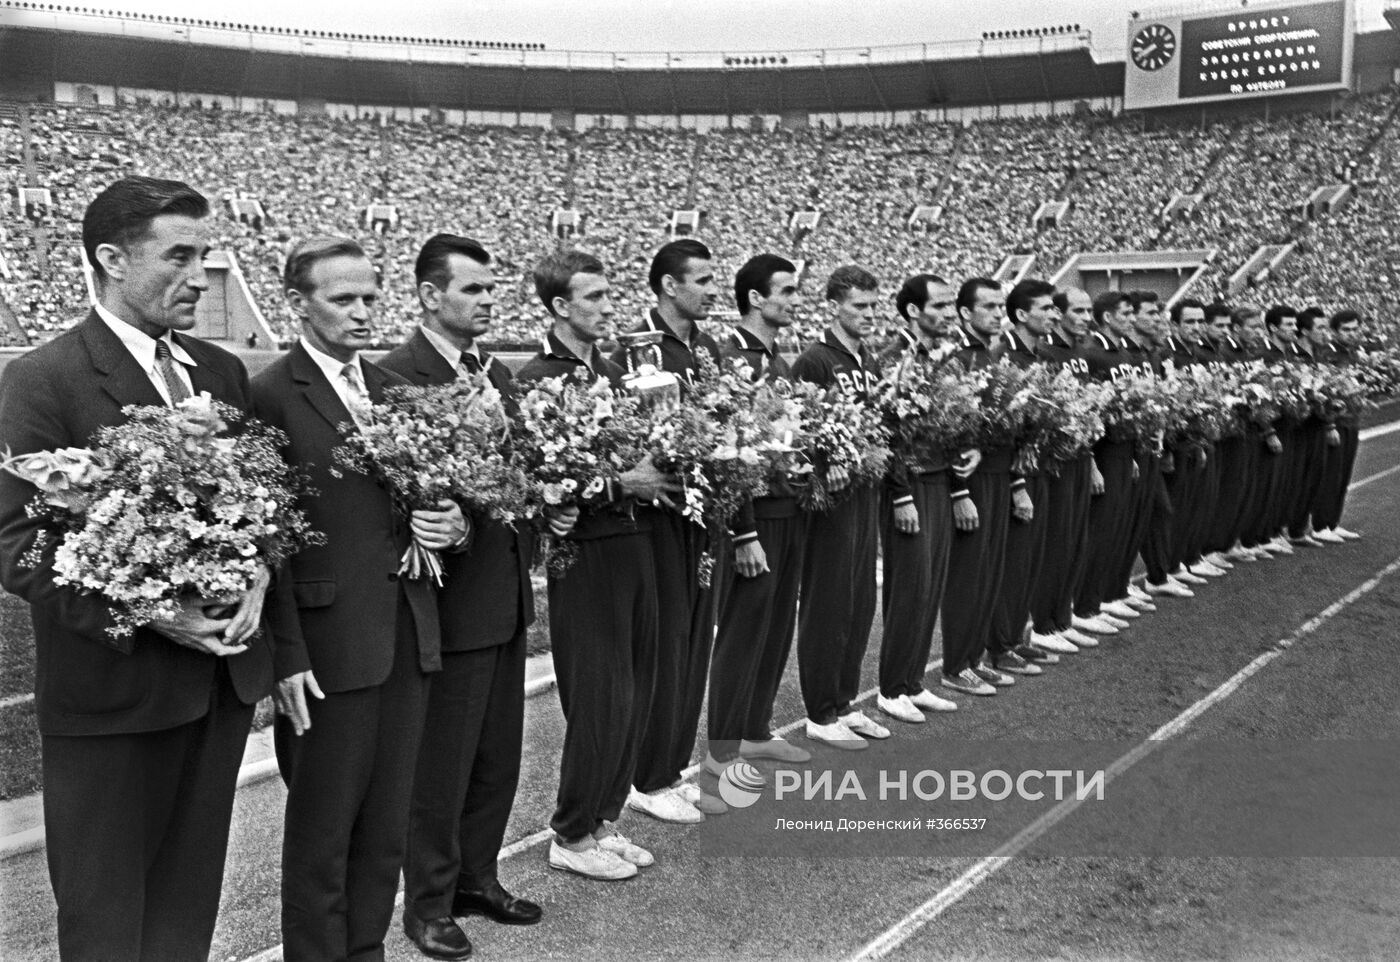 Сборная команда СССР по футболу 1960 года